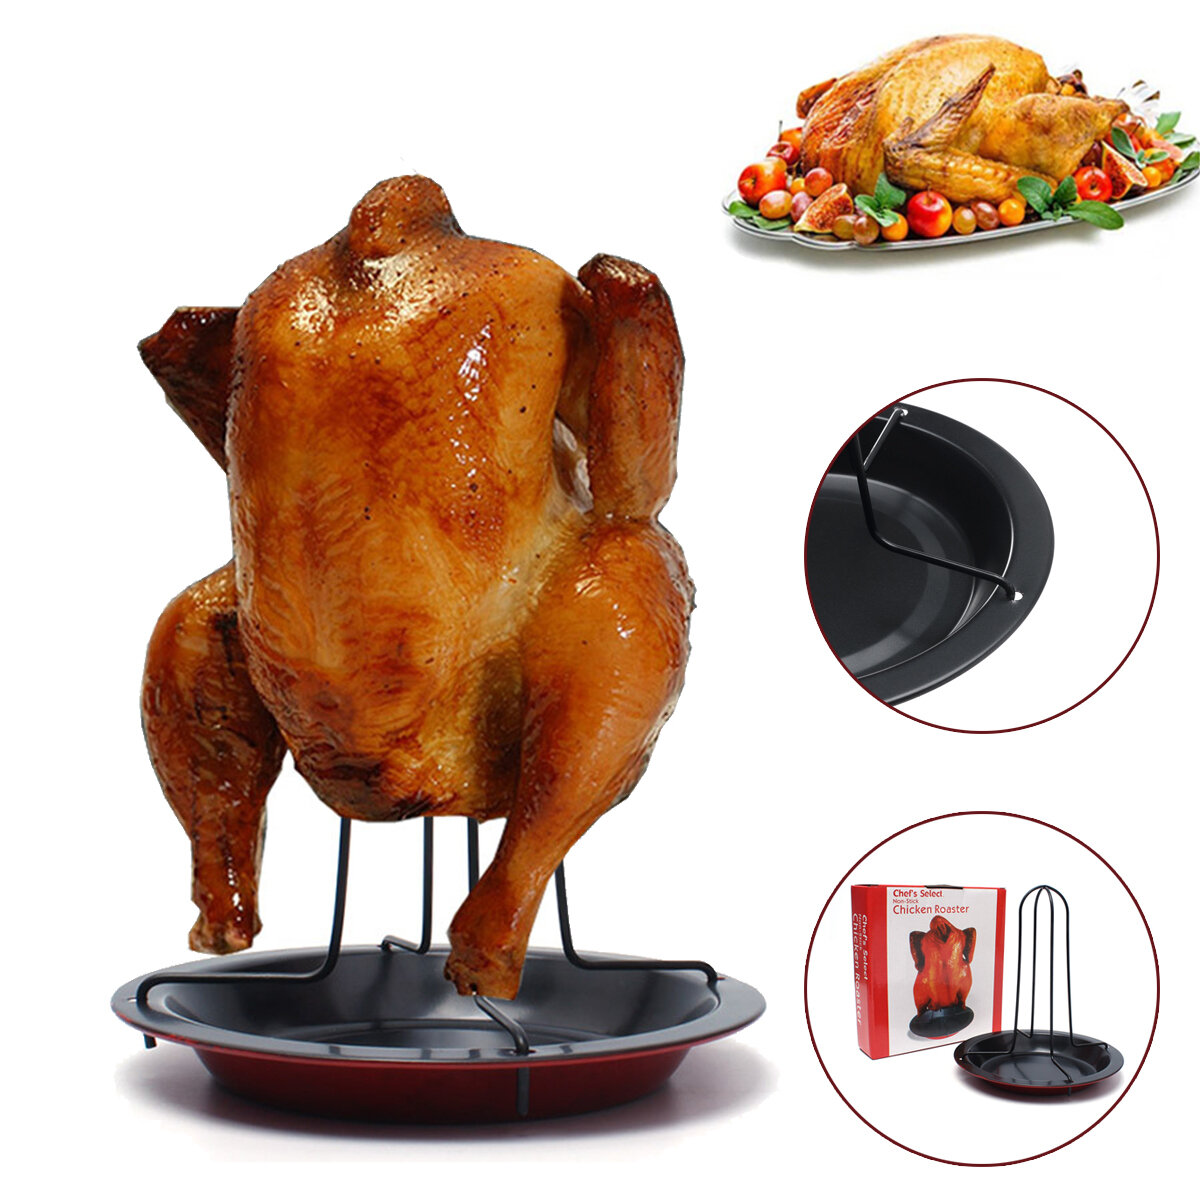 محمص دجاج من الفولاذ الكربوني غير لاصق مع حامل بط للشواء في المنزل والهواء الطلق والنزهات والتخييم.